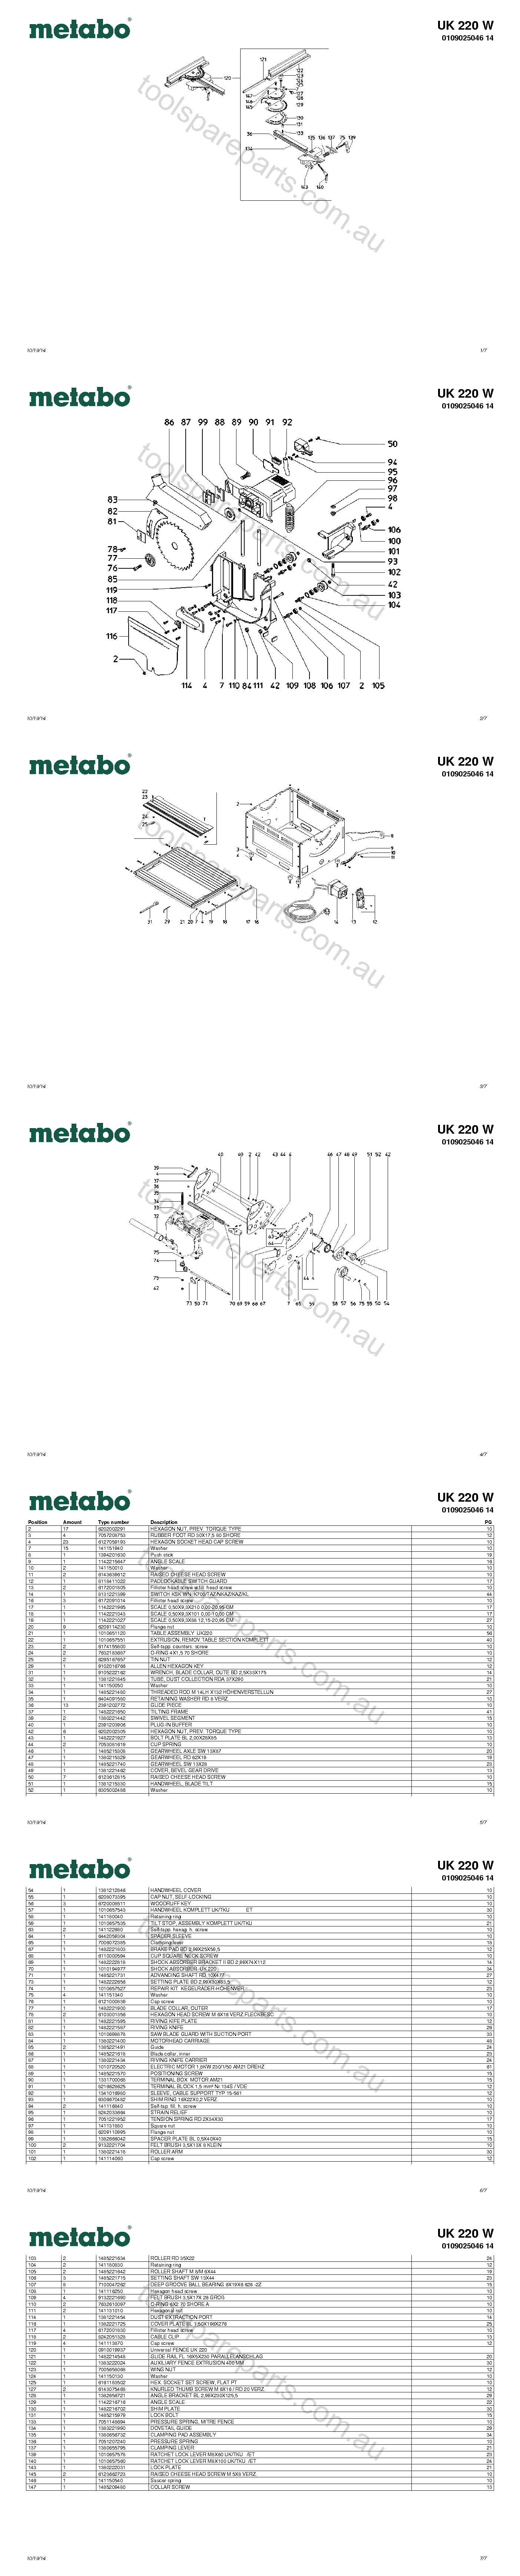 Metabo UK 220 W 0109025046 14  Diagram 1